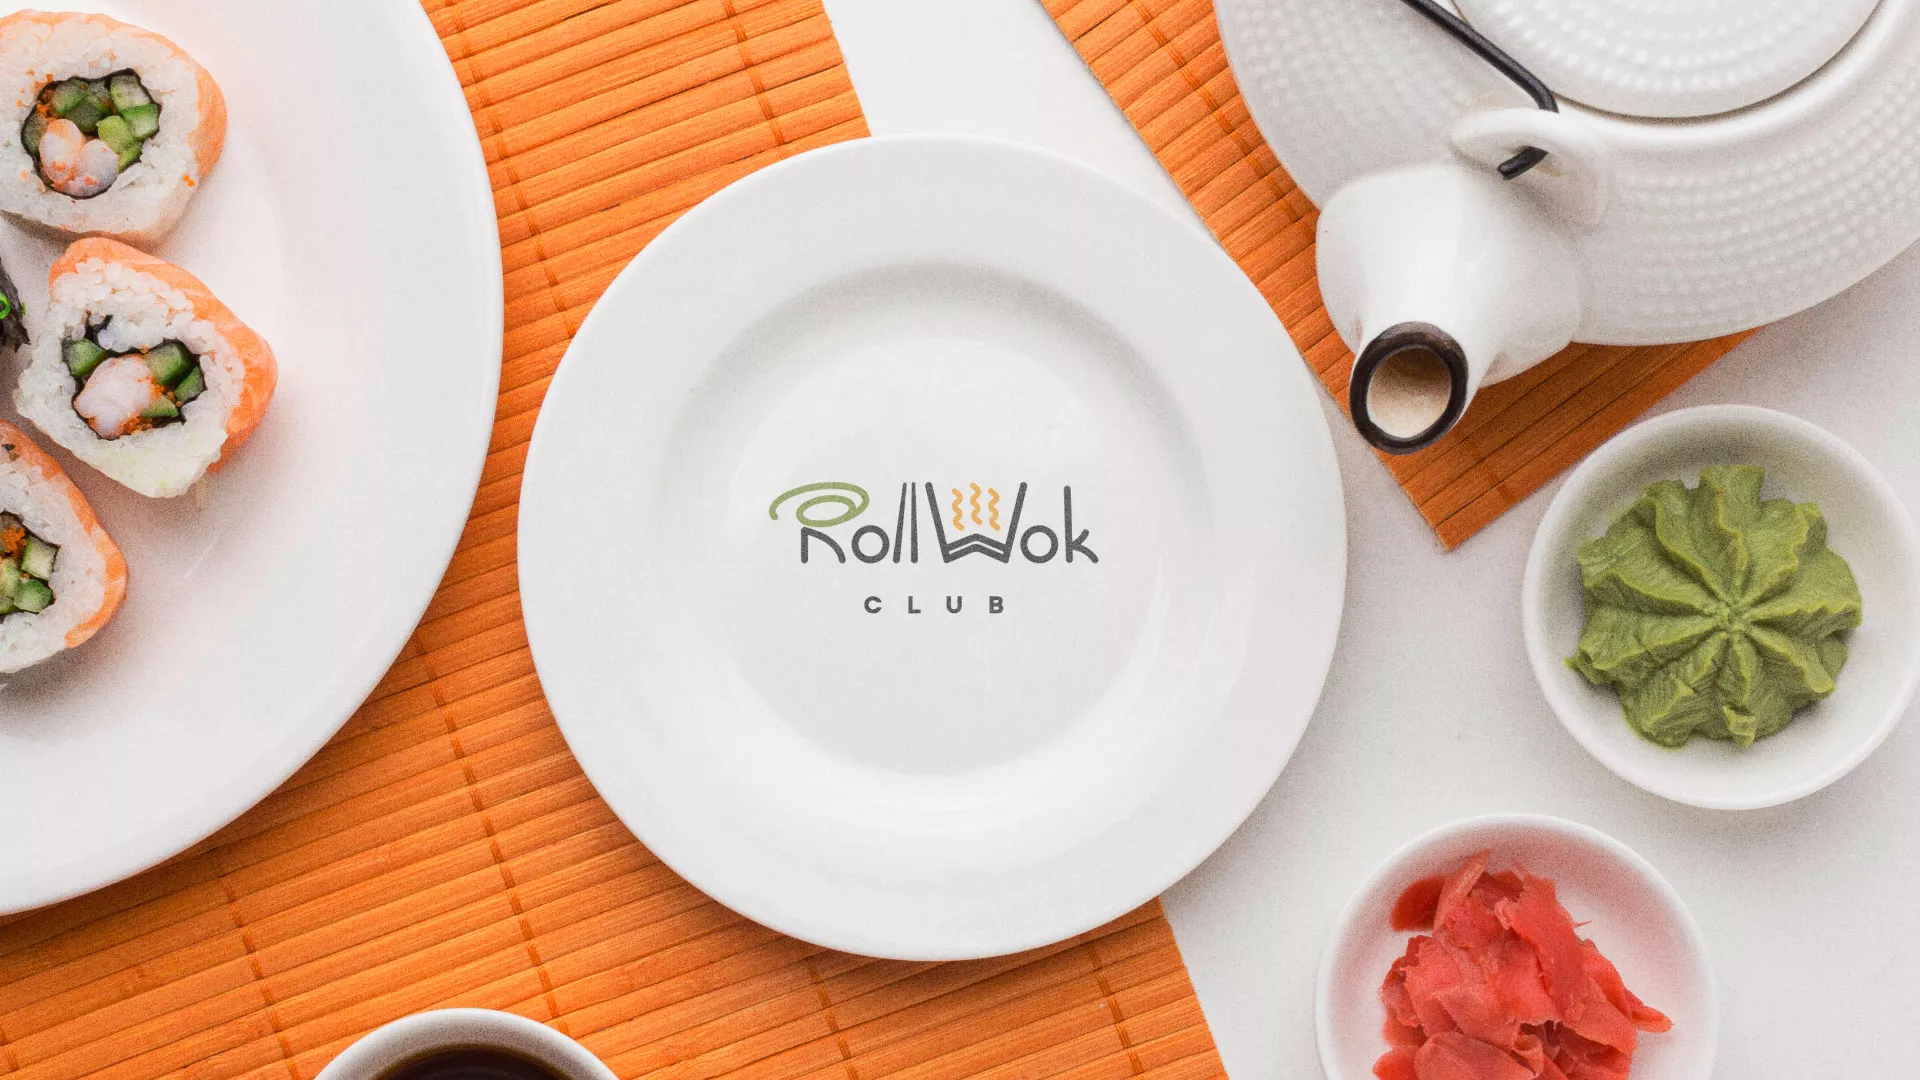 Разработка логотипа и фирменного стиля суши-бара «Roll Wok Club» в Трубчевске